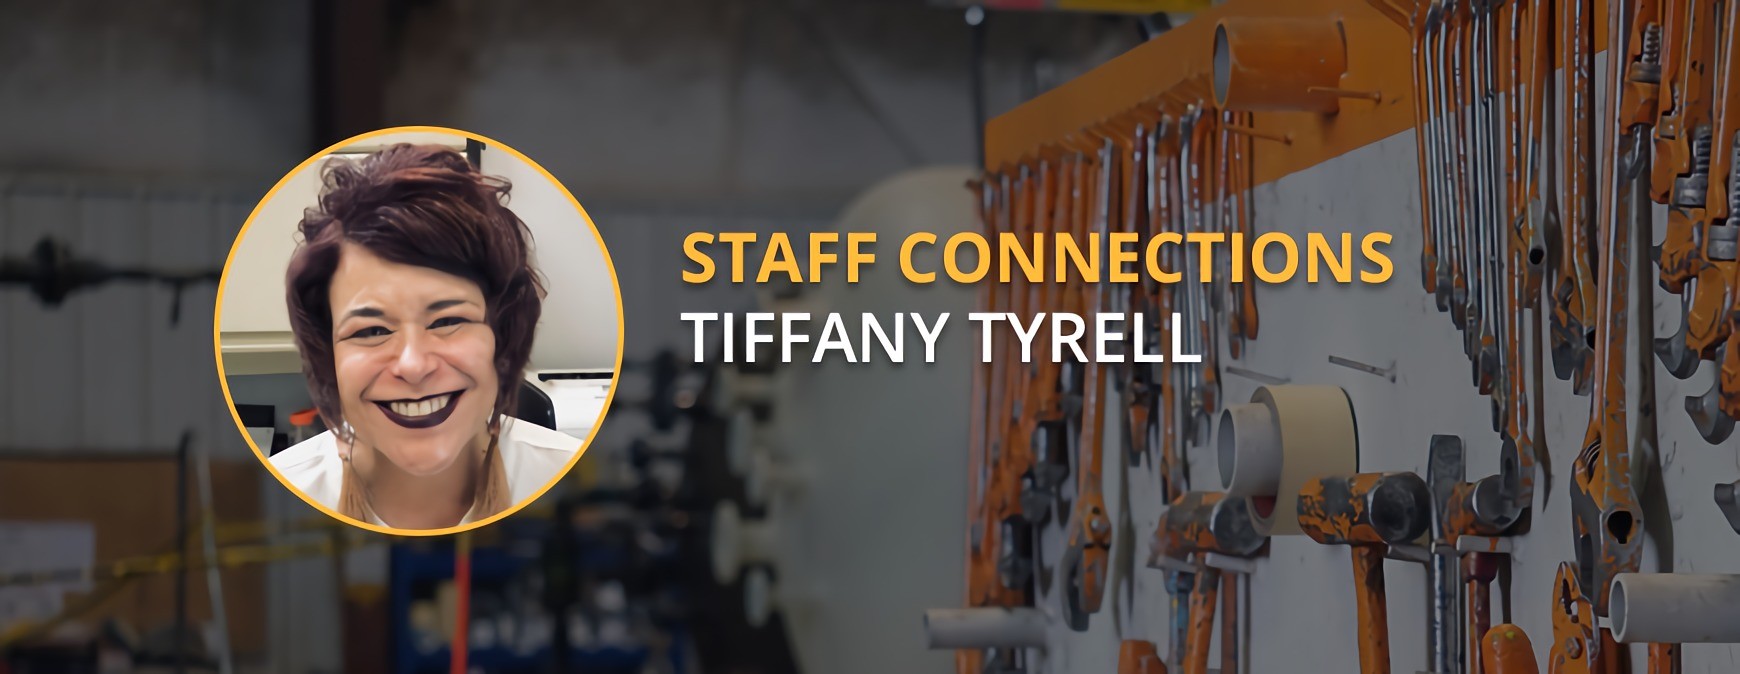 Conexión del personal de Tiffany Tyrrell